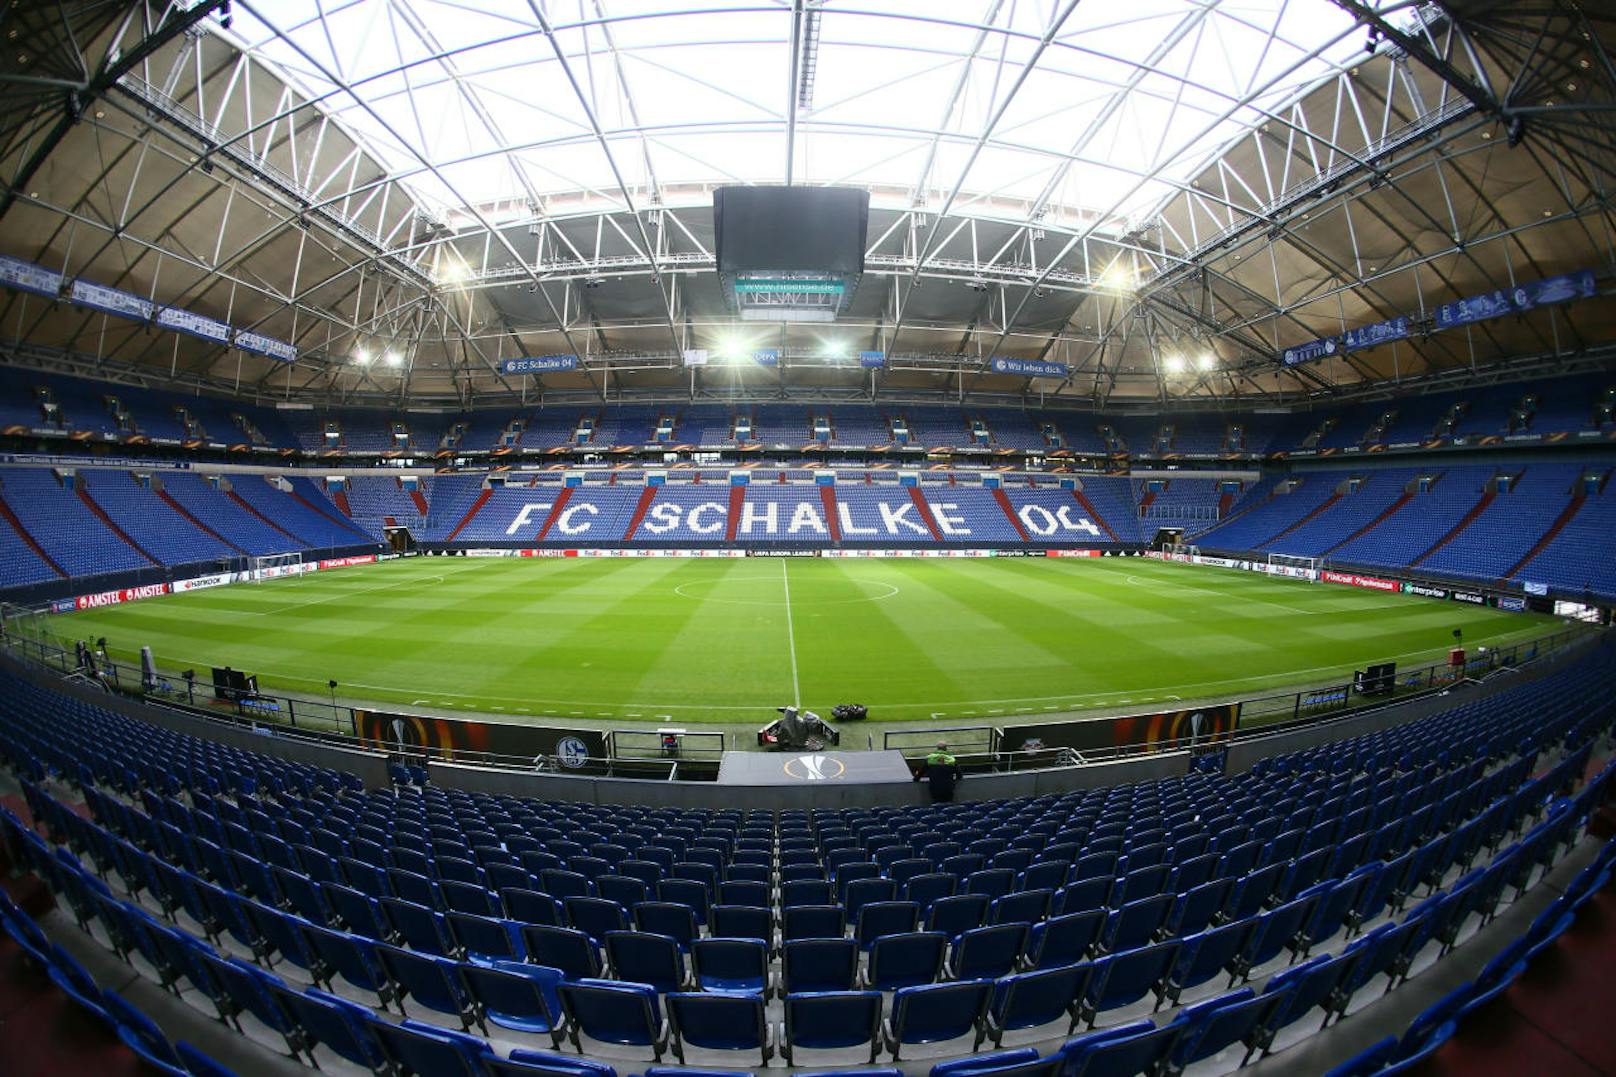 Die ÖFB-Legionäre Guido Burgstaller und Alessandro Schöpf kicken ebenfalls in einem künftigen EM-Stadion, nämlich in Schalkes Veltins-Arena in Gelsenkirchen. Fassungsvermögen: 62.270 Zuschauer. "The Dome" verfügt ebenfalls über ein Schiebedach.